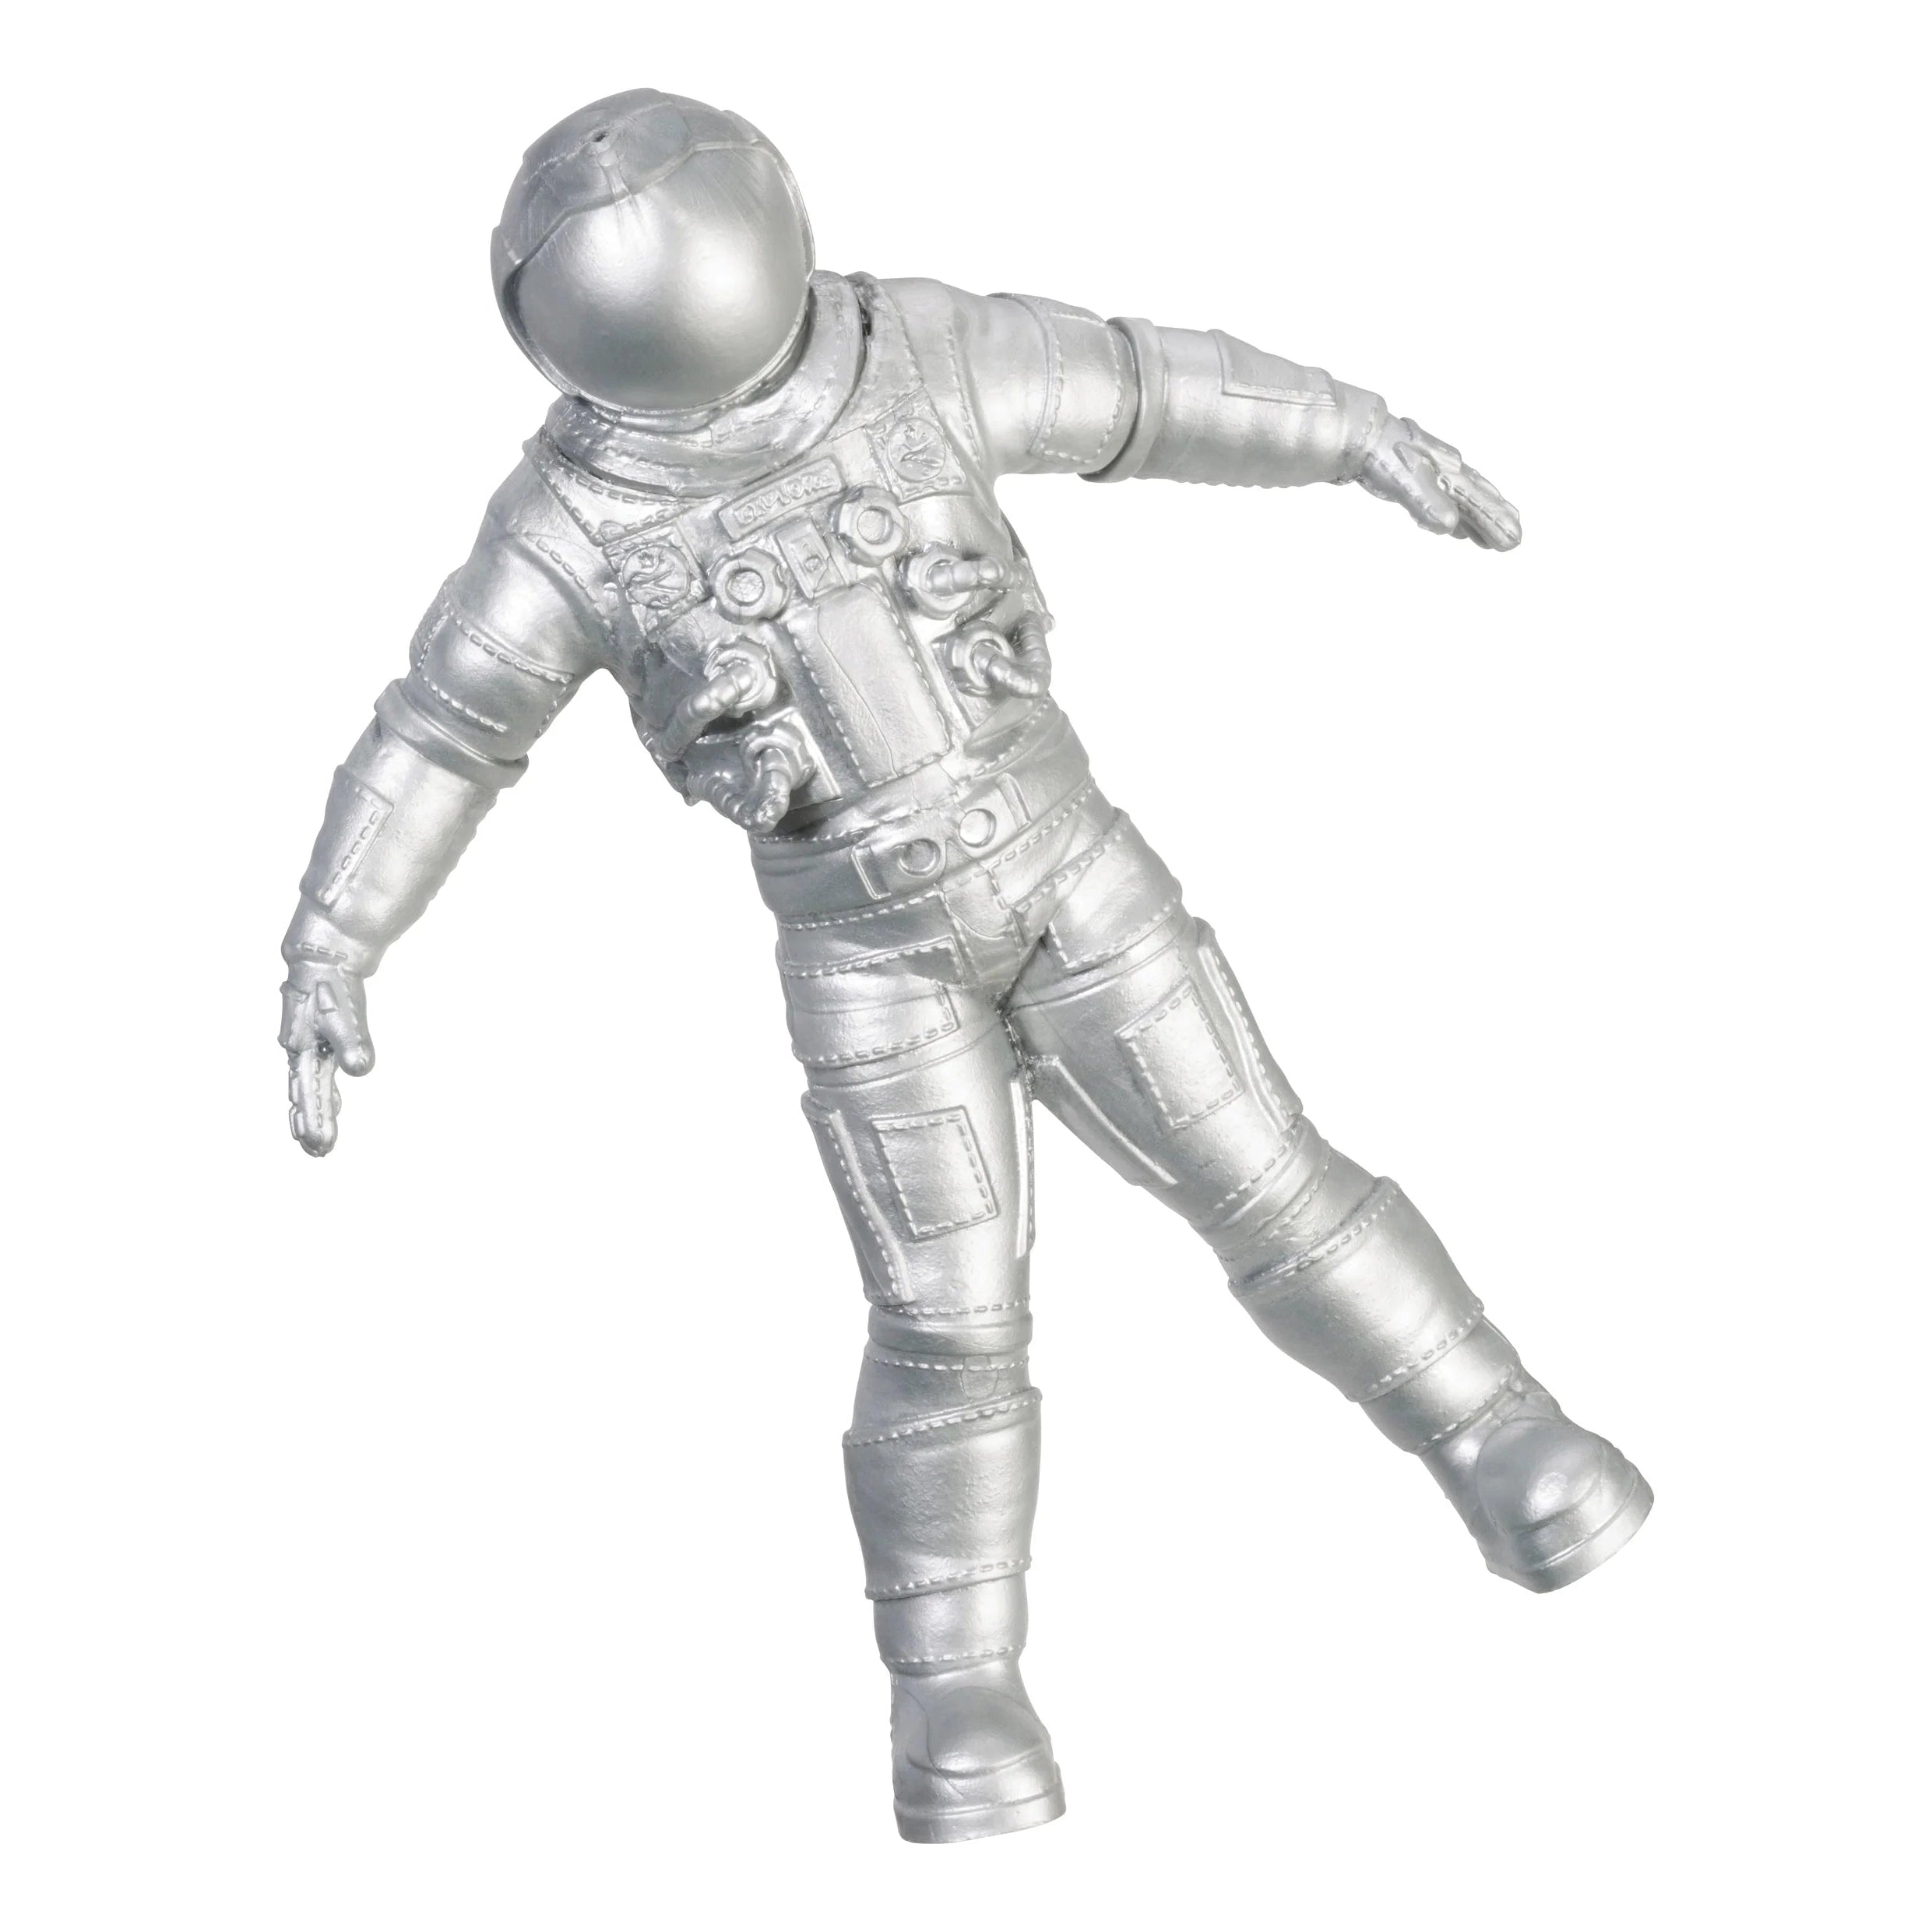 Toysmith Epic Stretch Astronaut Toy-TOYSMITH-Little Giant Kidz